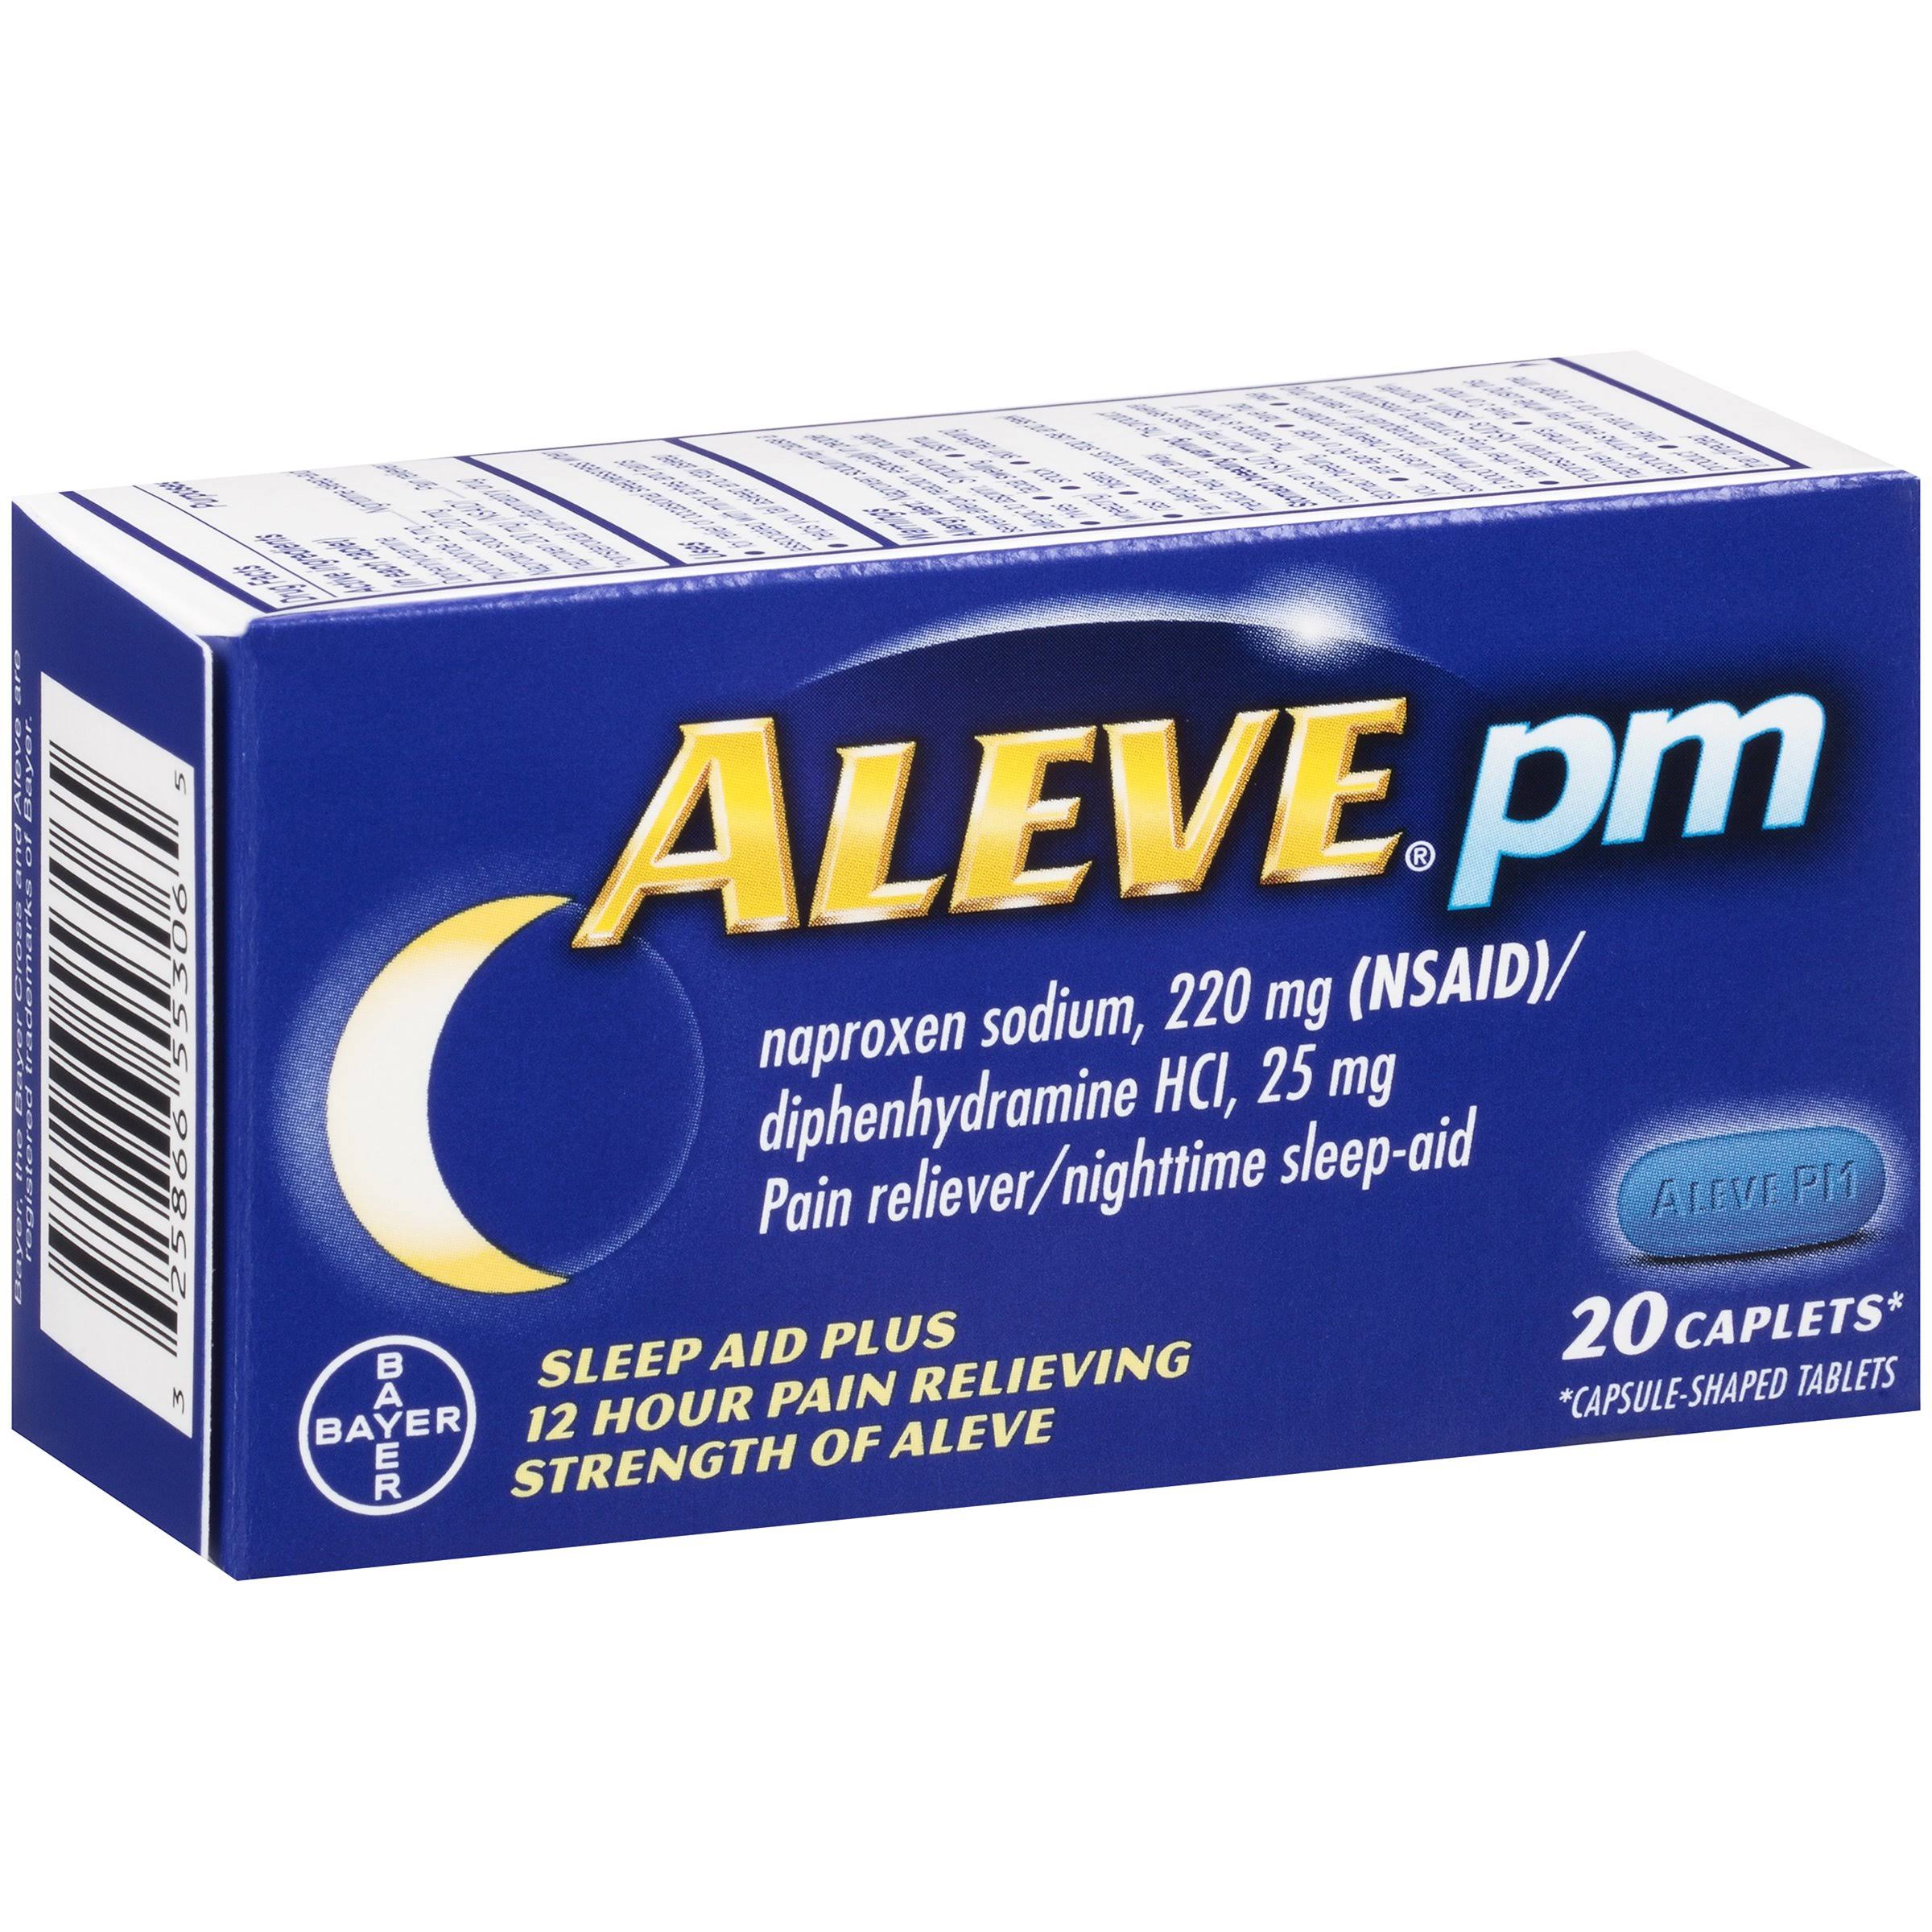 Bayer Aleve PM Sleep Aid - 20 Caplets